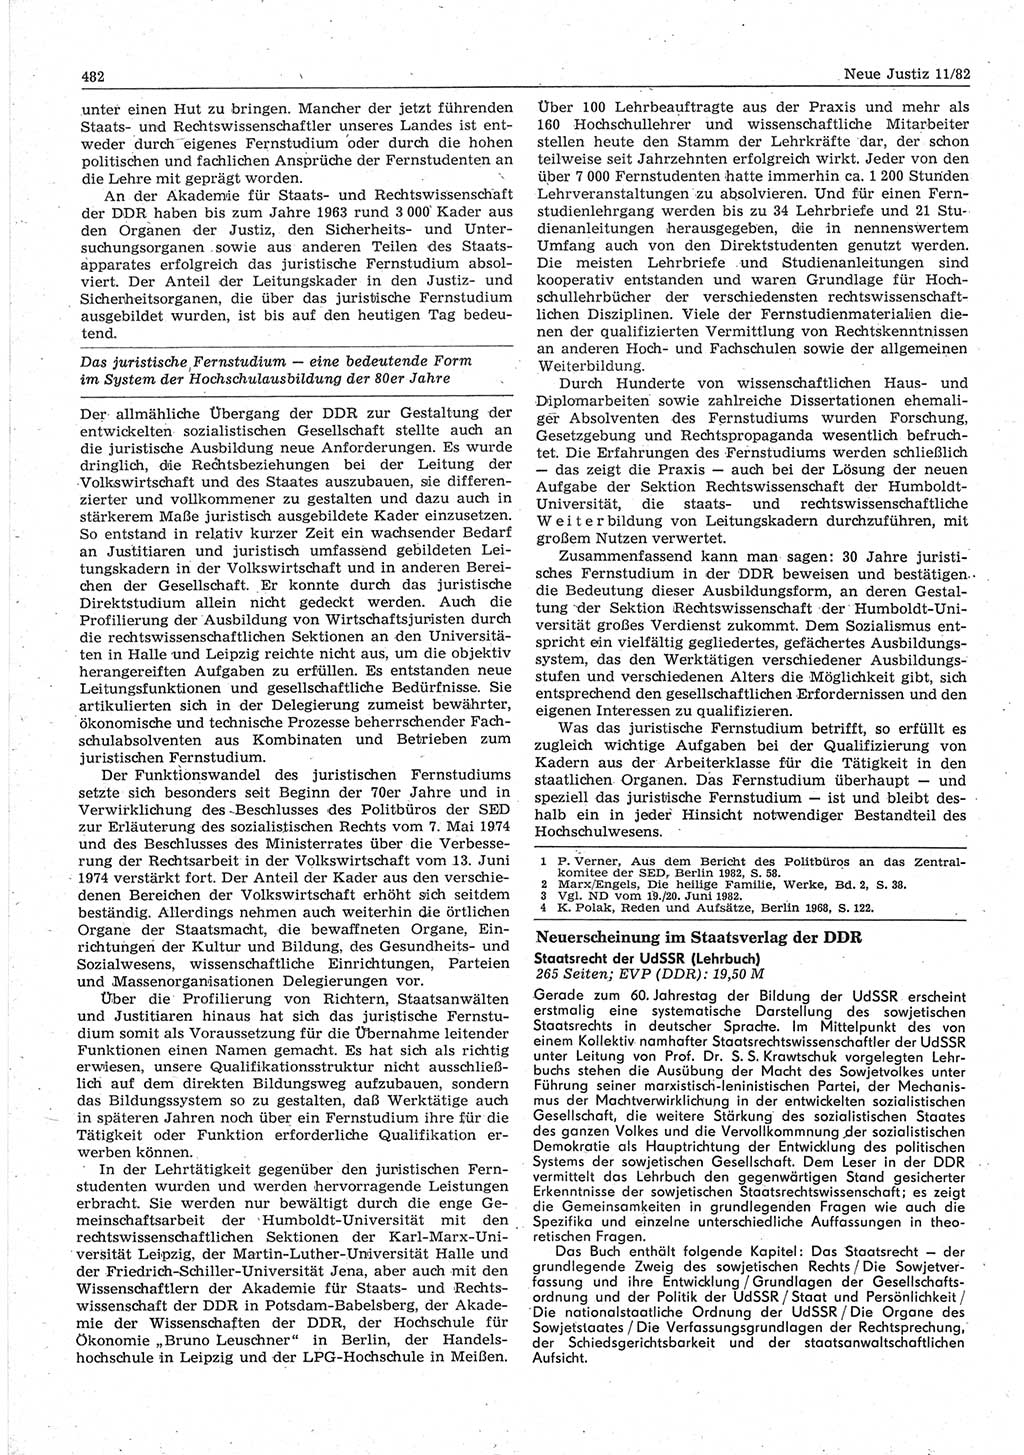 Neue Justiz (NJ), Zeitschrift für sozialistisches Recht und Gesetzlichkeit [Deutsche Demokratische Republik (DDR)], 36. Jahrgang 1982, Seite 482 (NJ DDR 1982, S. 482)